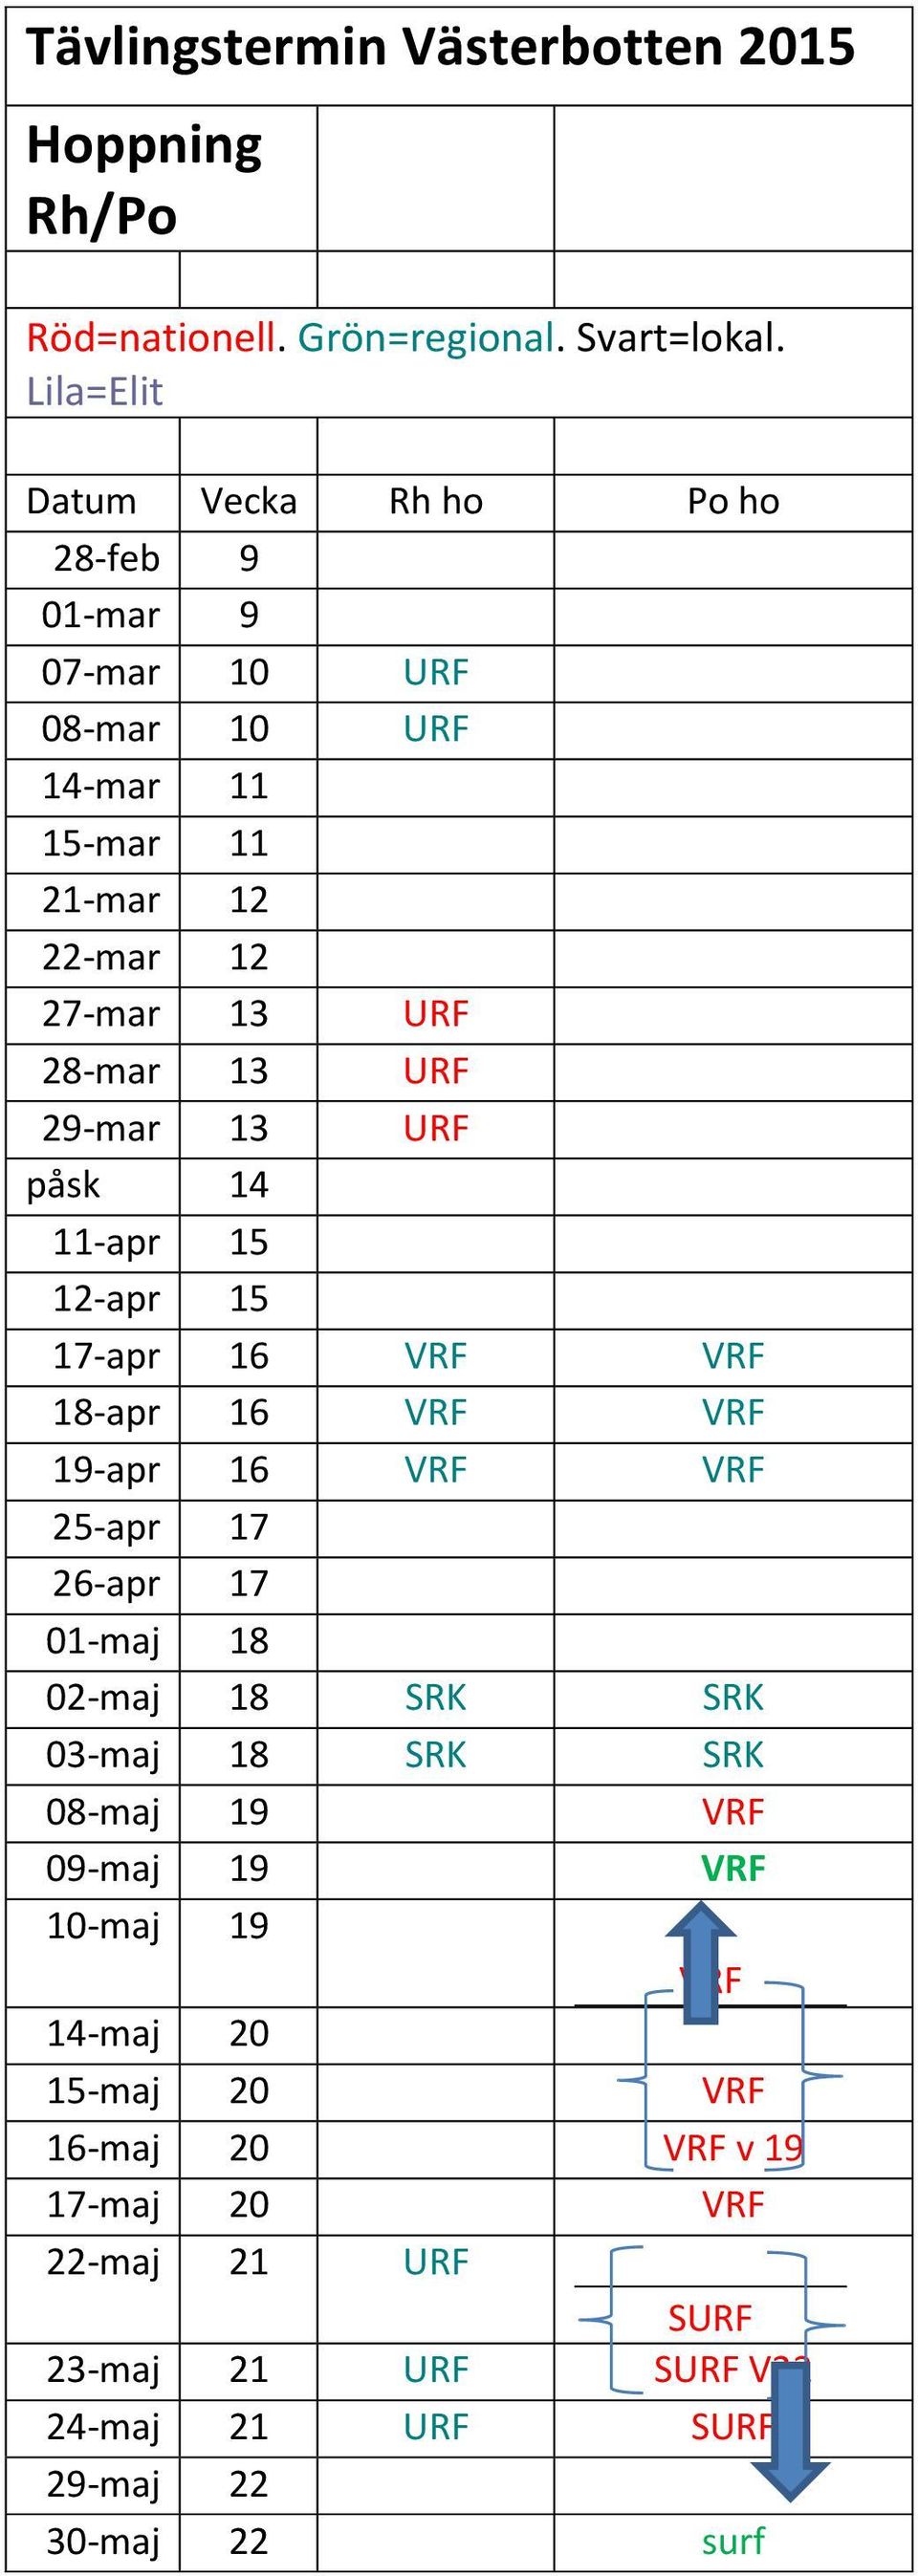 URF 29-mar 13 URF påsk 14 11-apr 15 12-apr 15 17-apr 16 VRF VRF 18-apr 16 VRF VRF 19-apr 16 VRF VRF 25-apr 17 26-apr 17 01-maj 18 02-maj 18 SRK